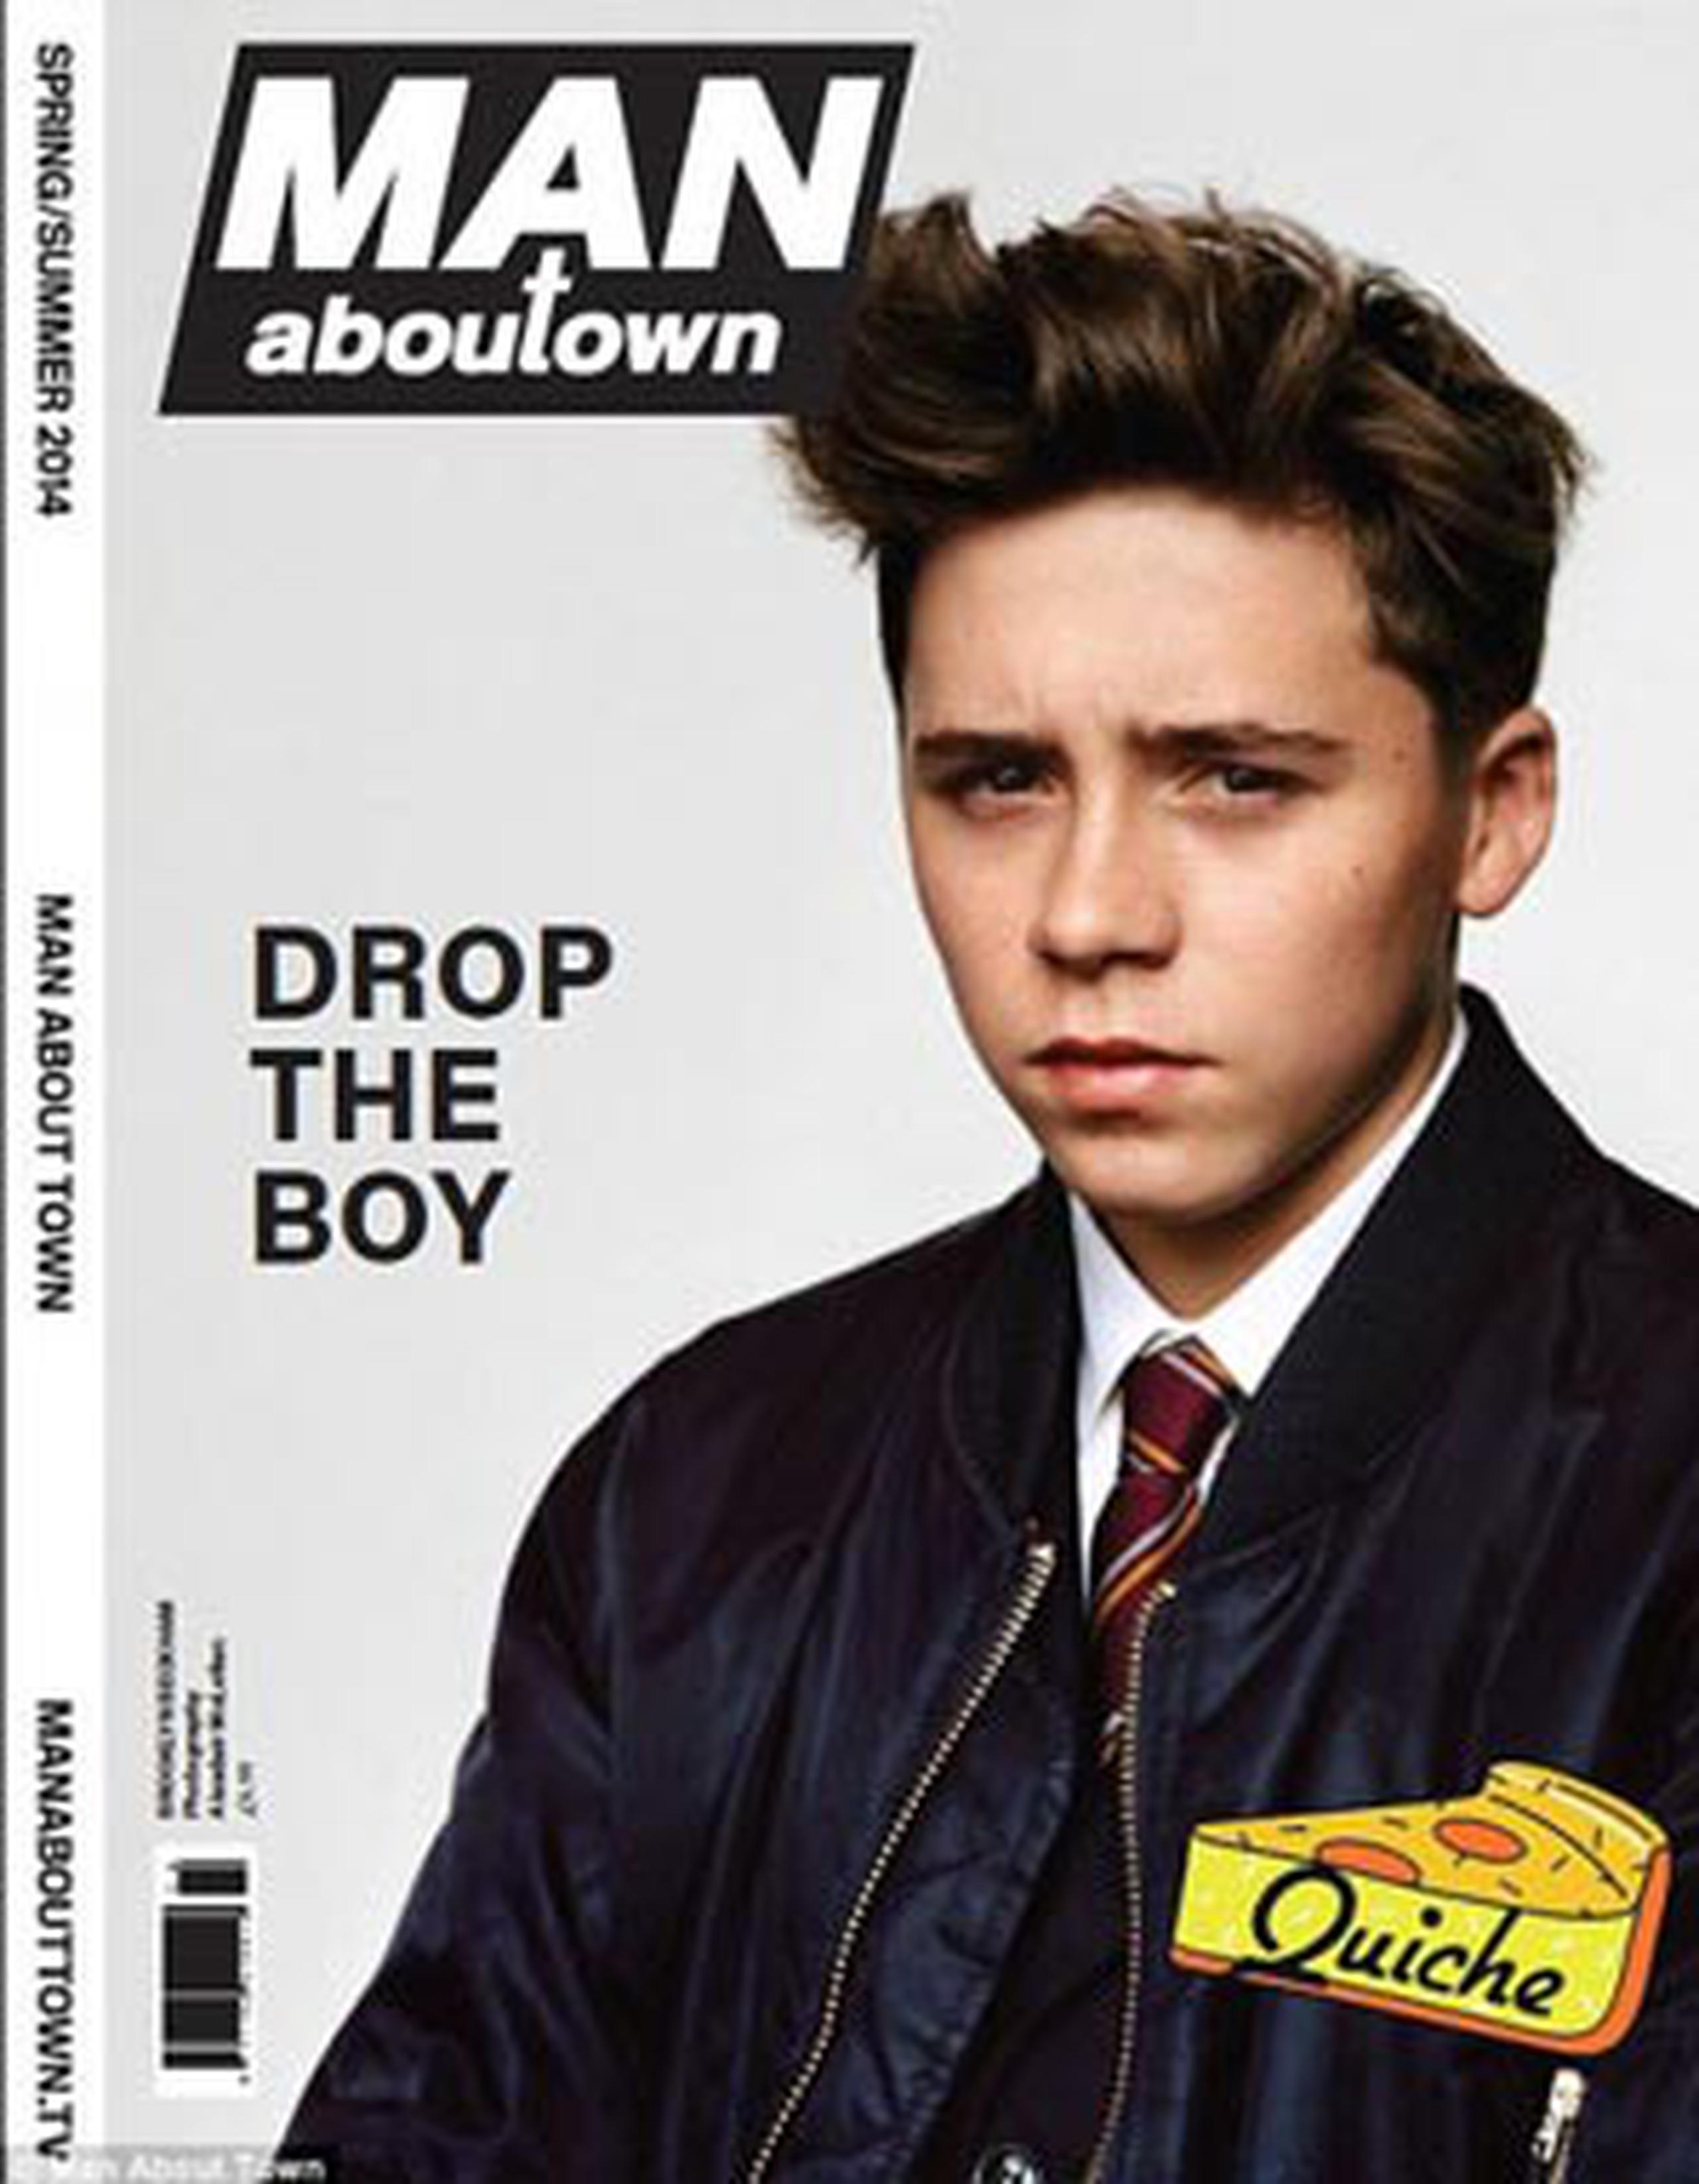 El joven aparece como protagonista de la edición de primavera-verano 2014 de la revista bianual "Man About Town". (wonderlandmagazine.com)